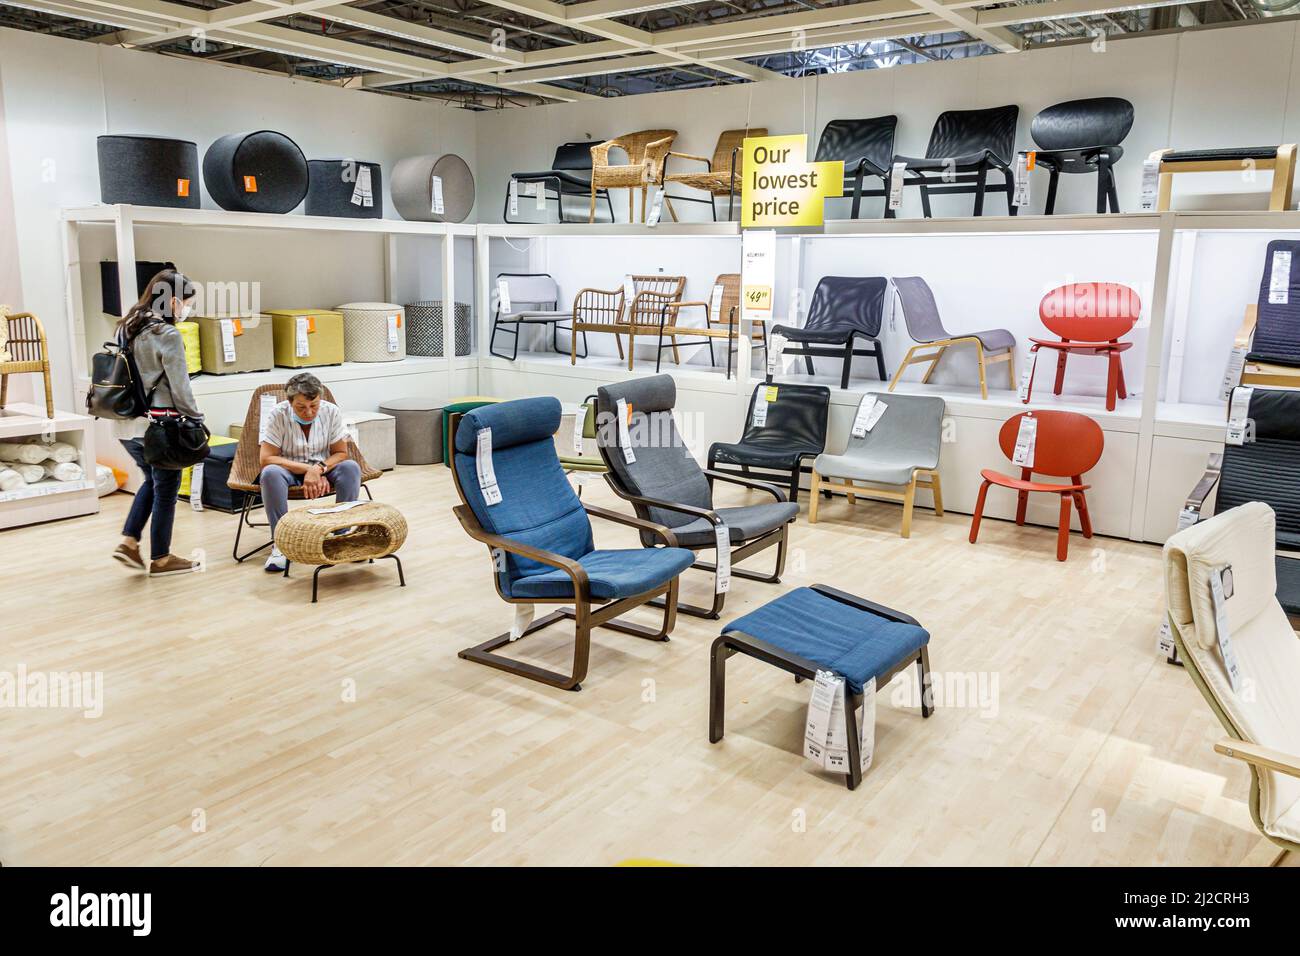 Miami Florida IKEA maison biens ameublement accessoires meubles décor shopping acheteurs à l'intérieur de l'intérieur exposition vente mère chaises fille look tr Banque D'Images